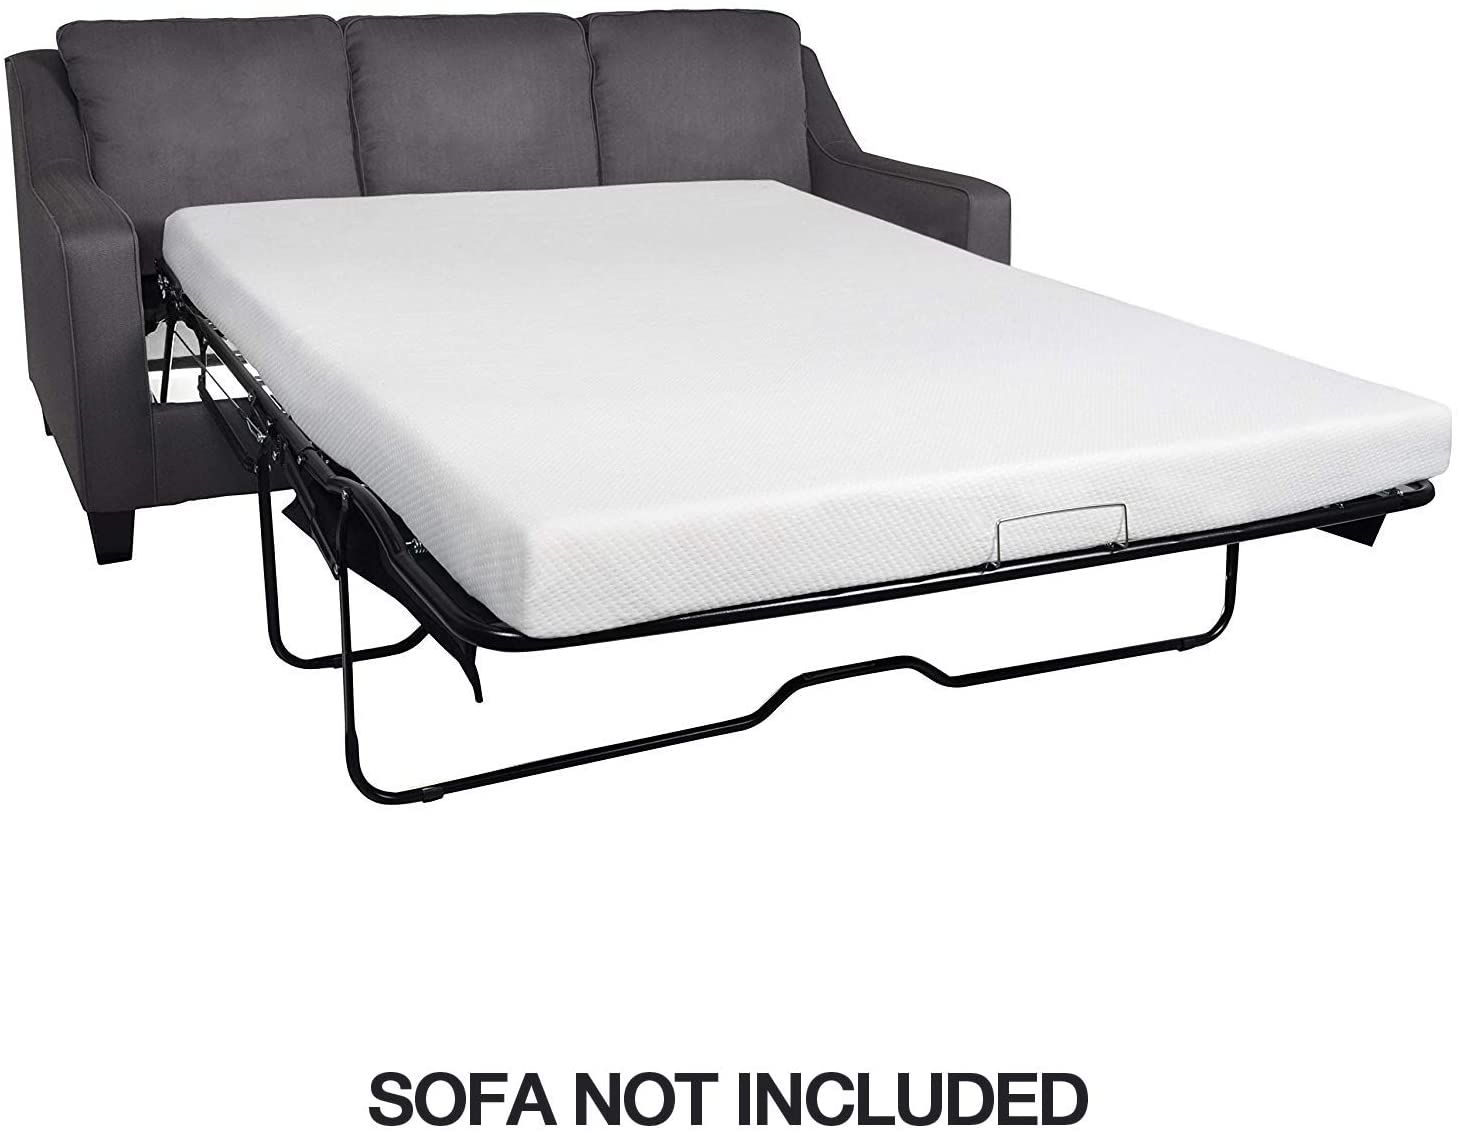 sofa bed foam mattress replacement